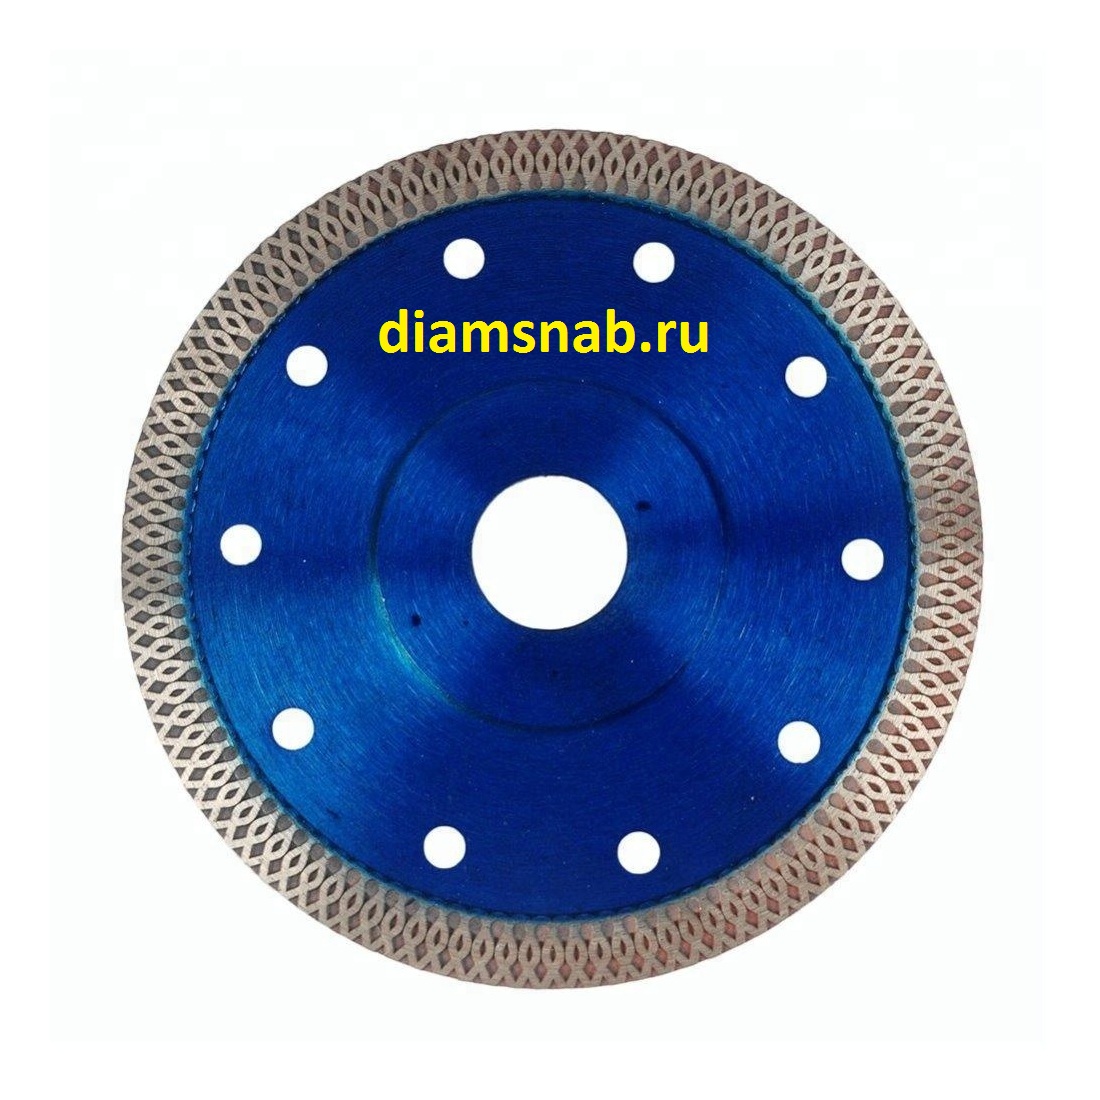 Ультратонкий алмазный отрезной диск 200х22.23 мм тонкорез для УШМ .